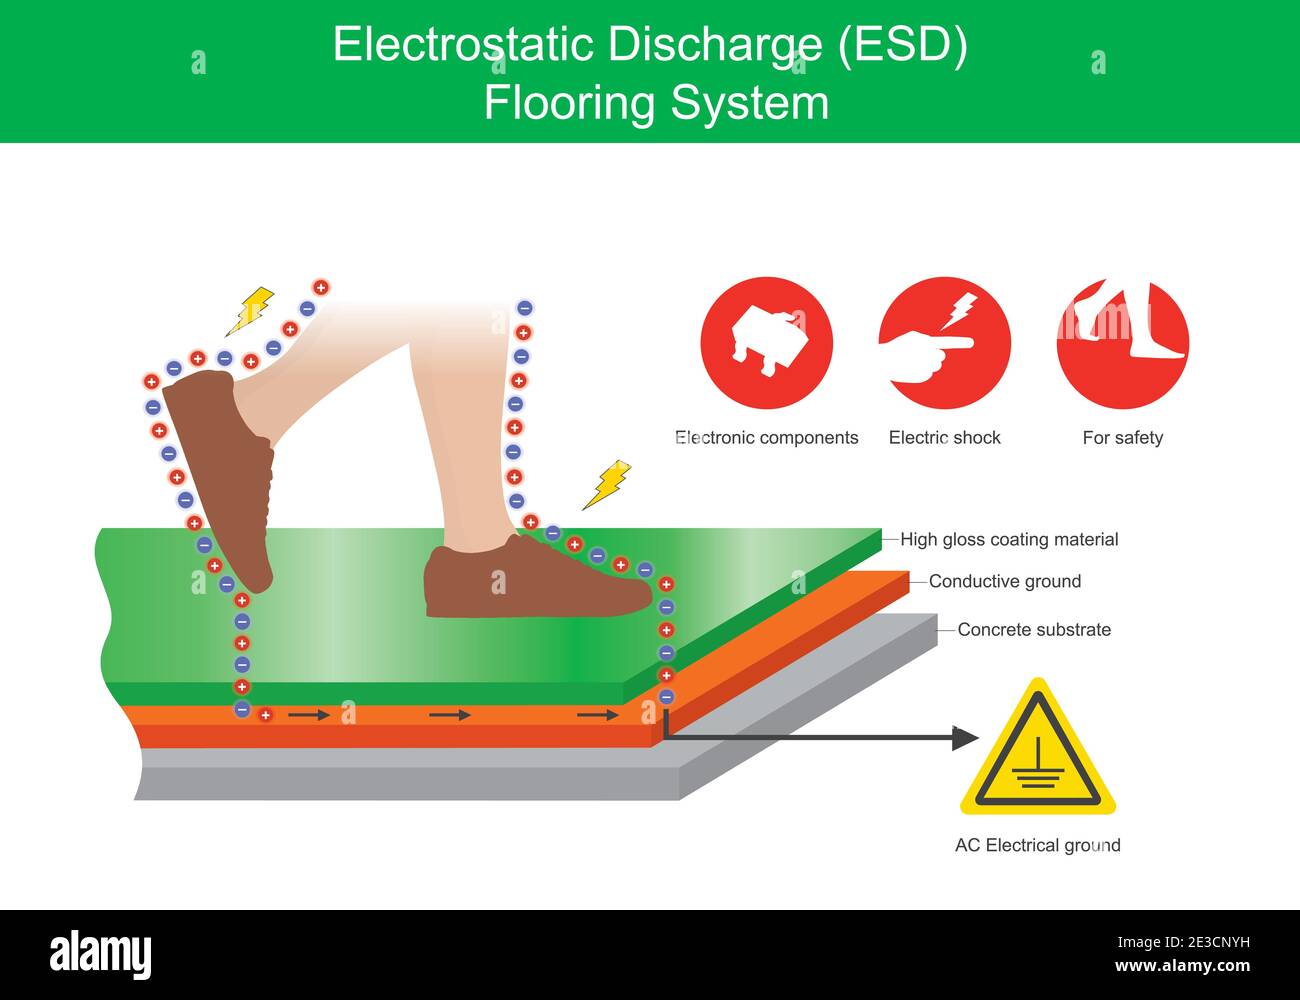 Elektrostatische Entladung Bodensystem. Die Abbildung erläutert den Schutz von Stromschlägen zwischen einem menschlichen Körper und einem Industrieboden. Stock Vektor